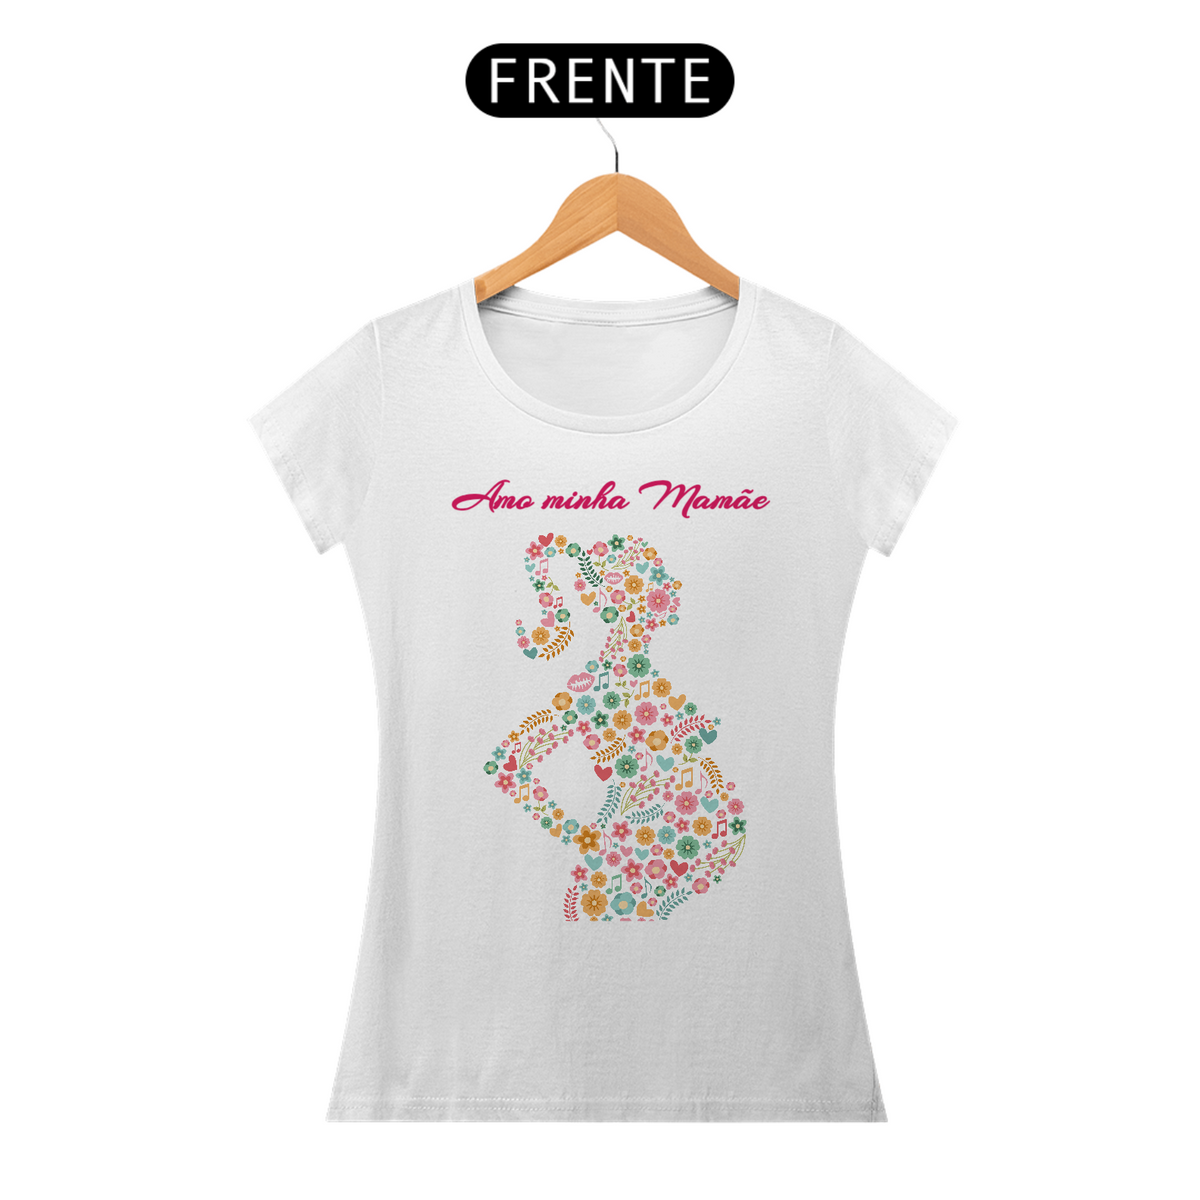 Nome do produto: Camiseta Feminina - Amo minha Mamãe